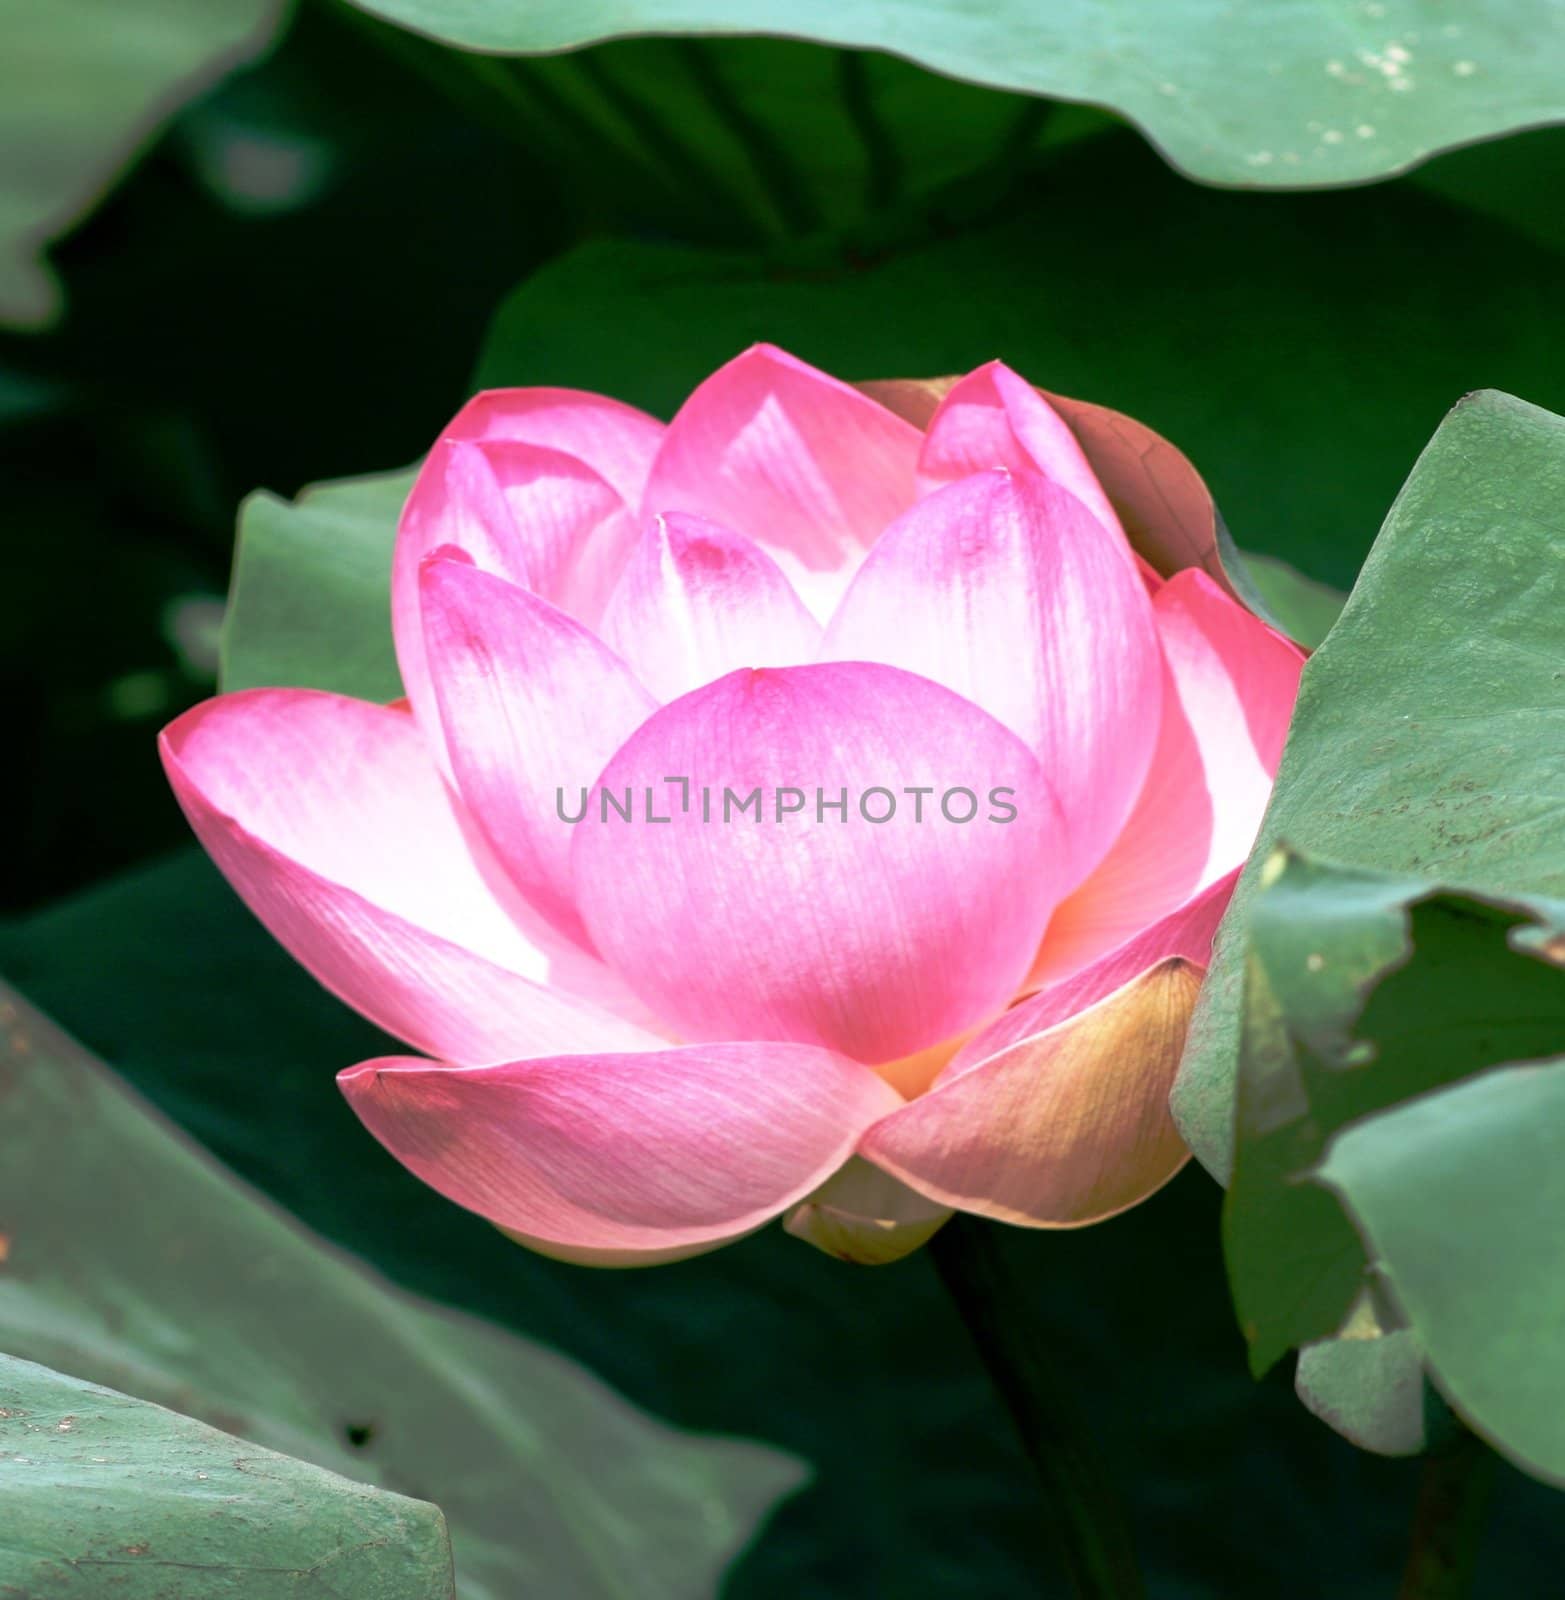 Lotus flower on green leaves